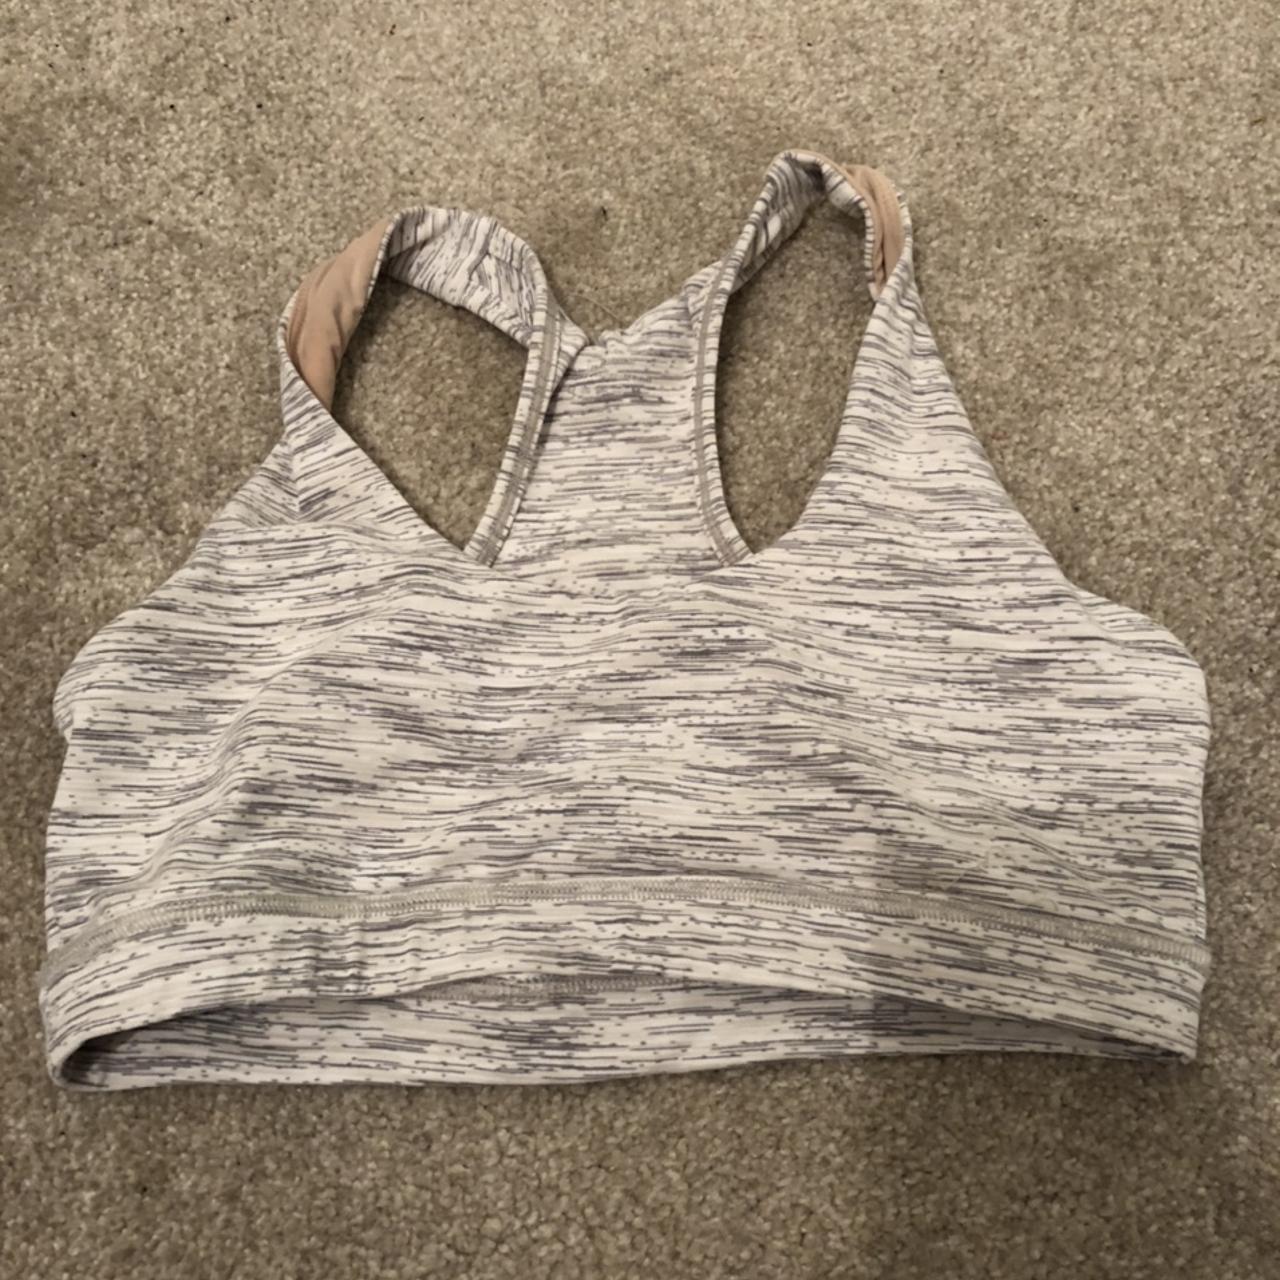 Flex fit sports bra size large worn few times in - Depop